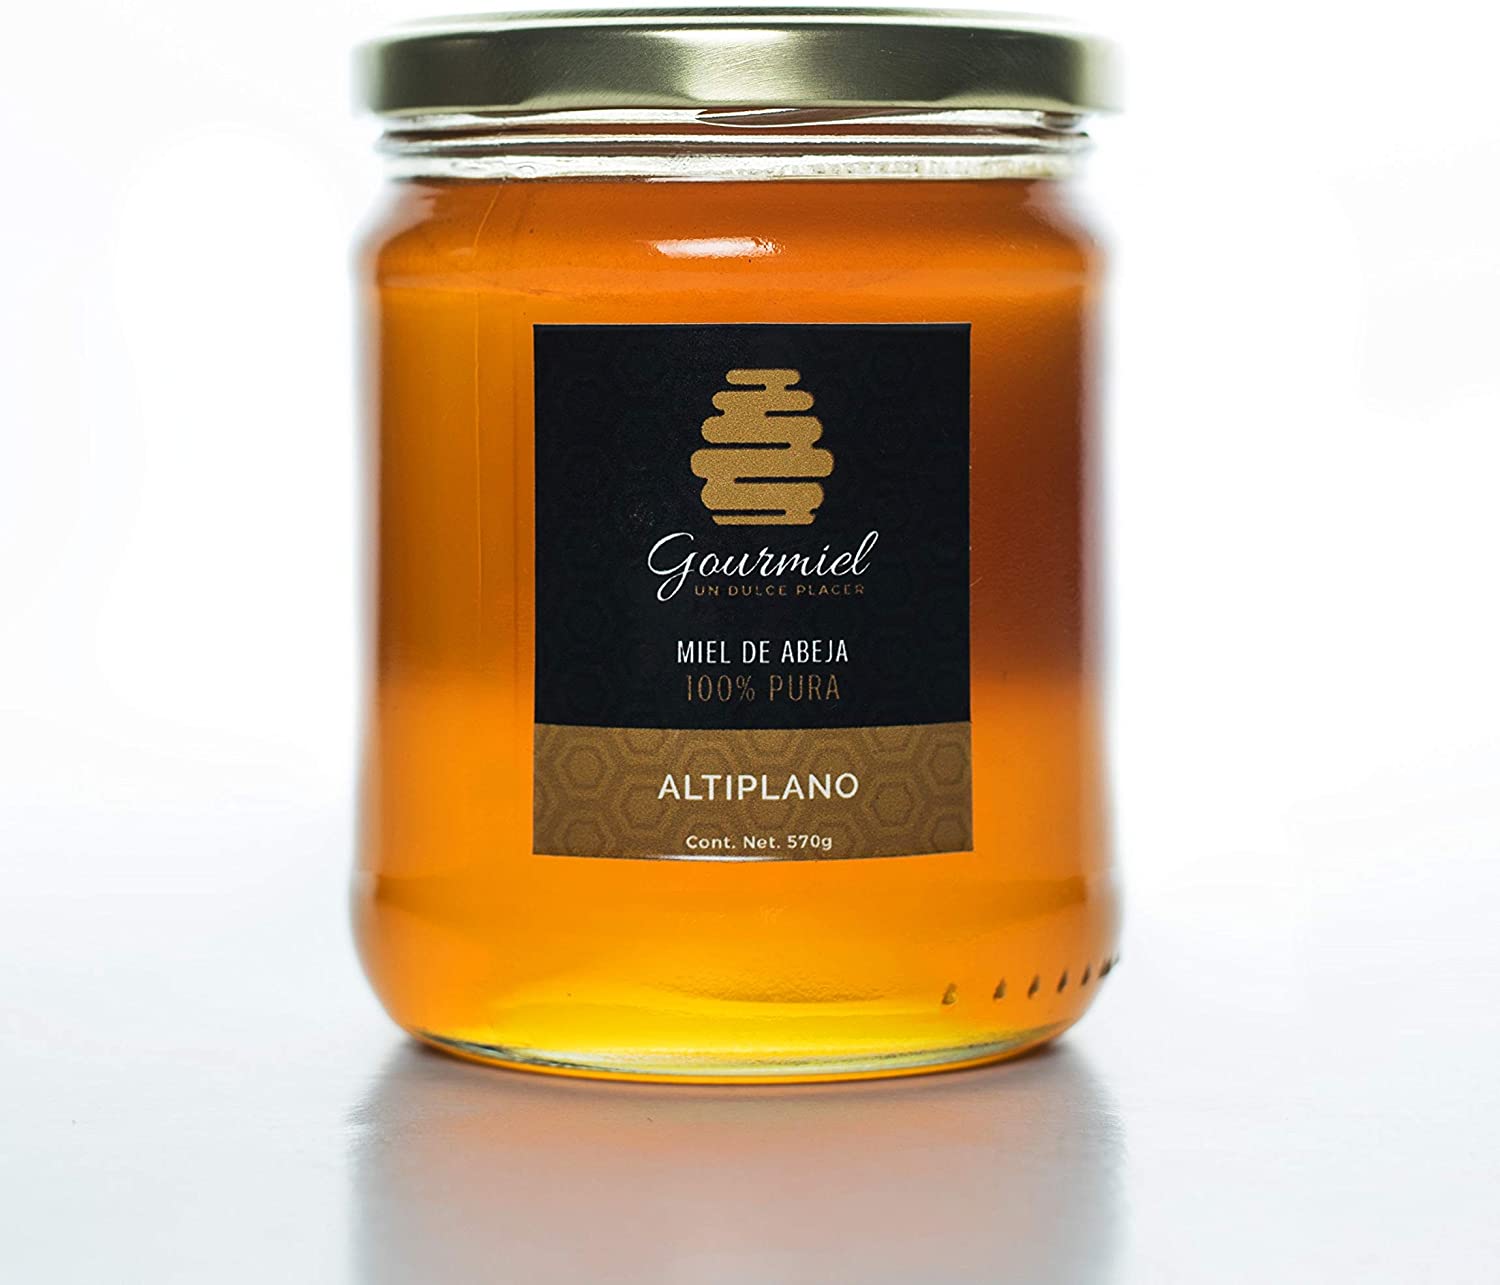 Miel de abeja 100% pura